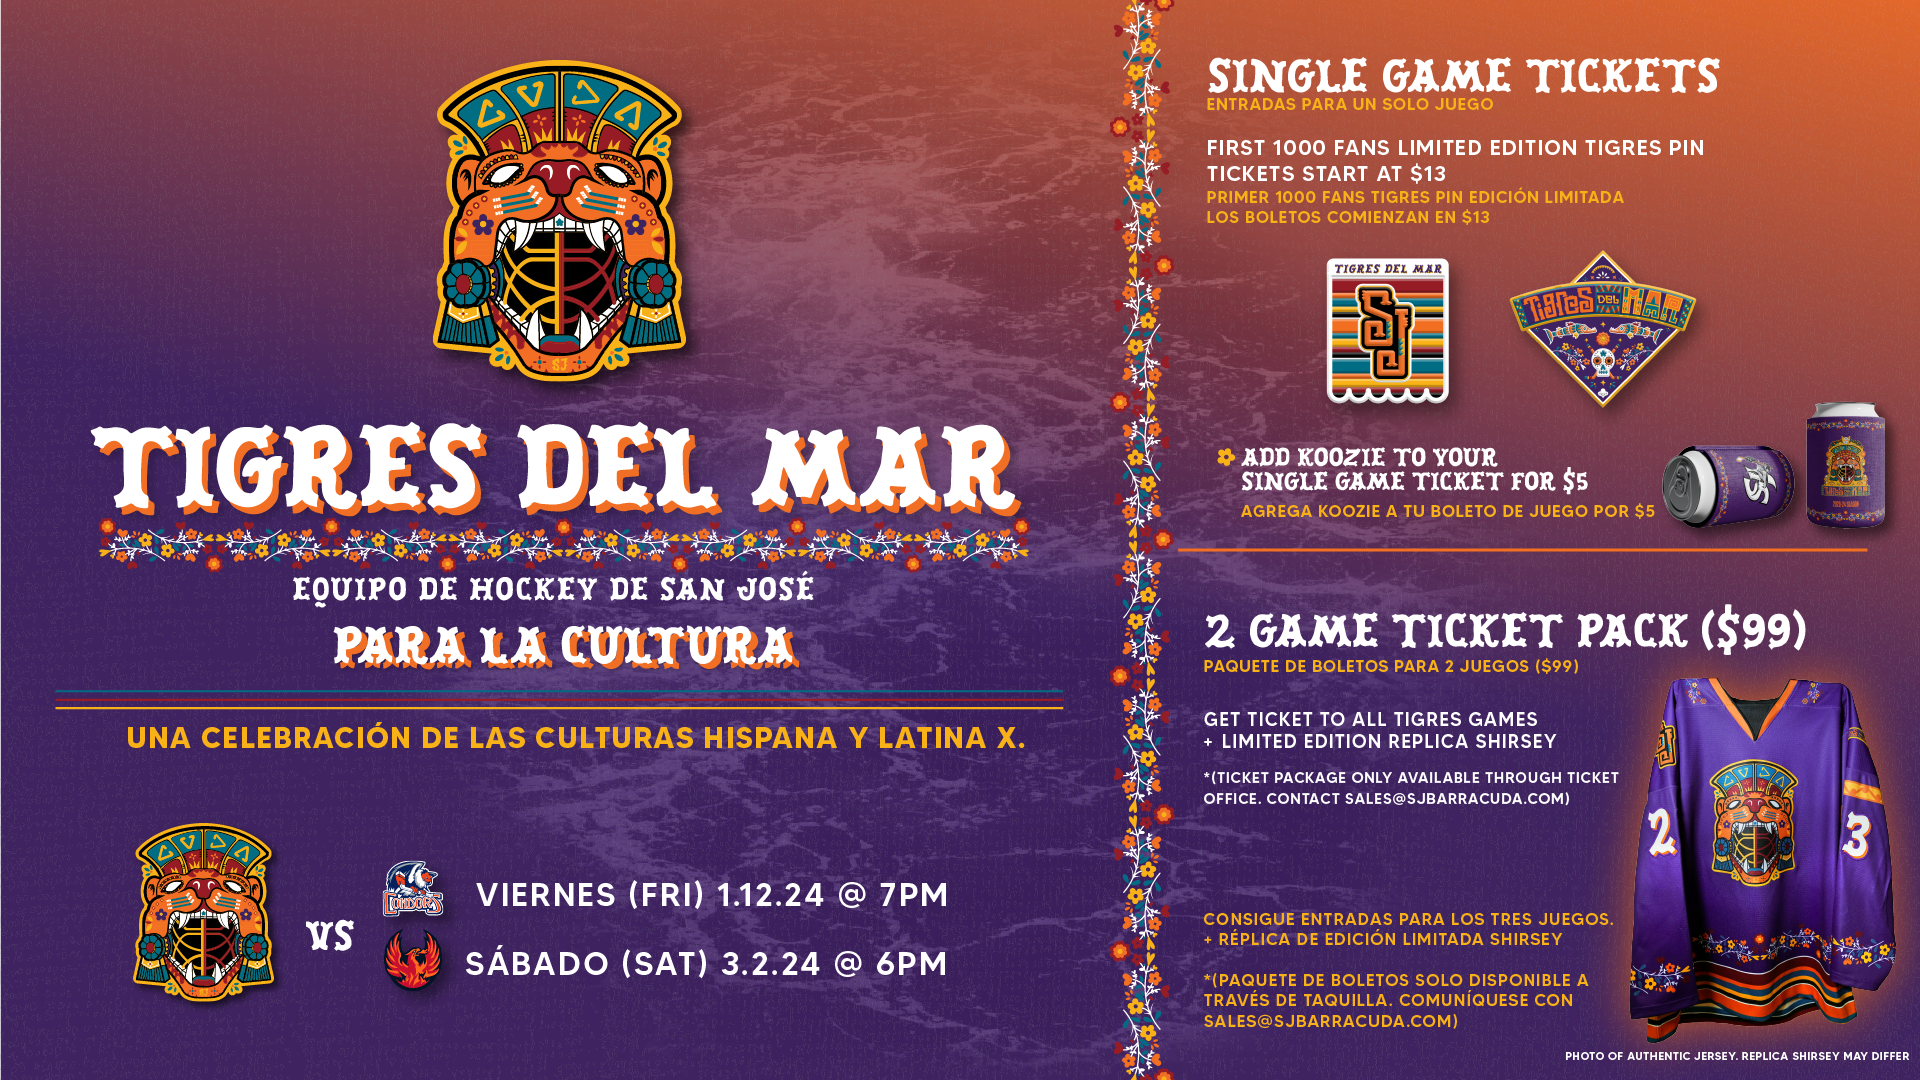 Tigres Del Mar Ticket 2 Pack Ad_1920x1080.png